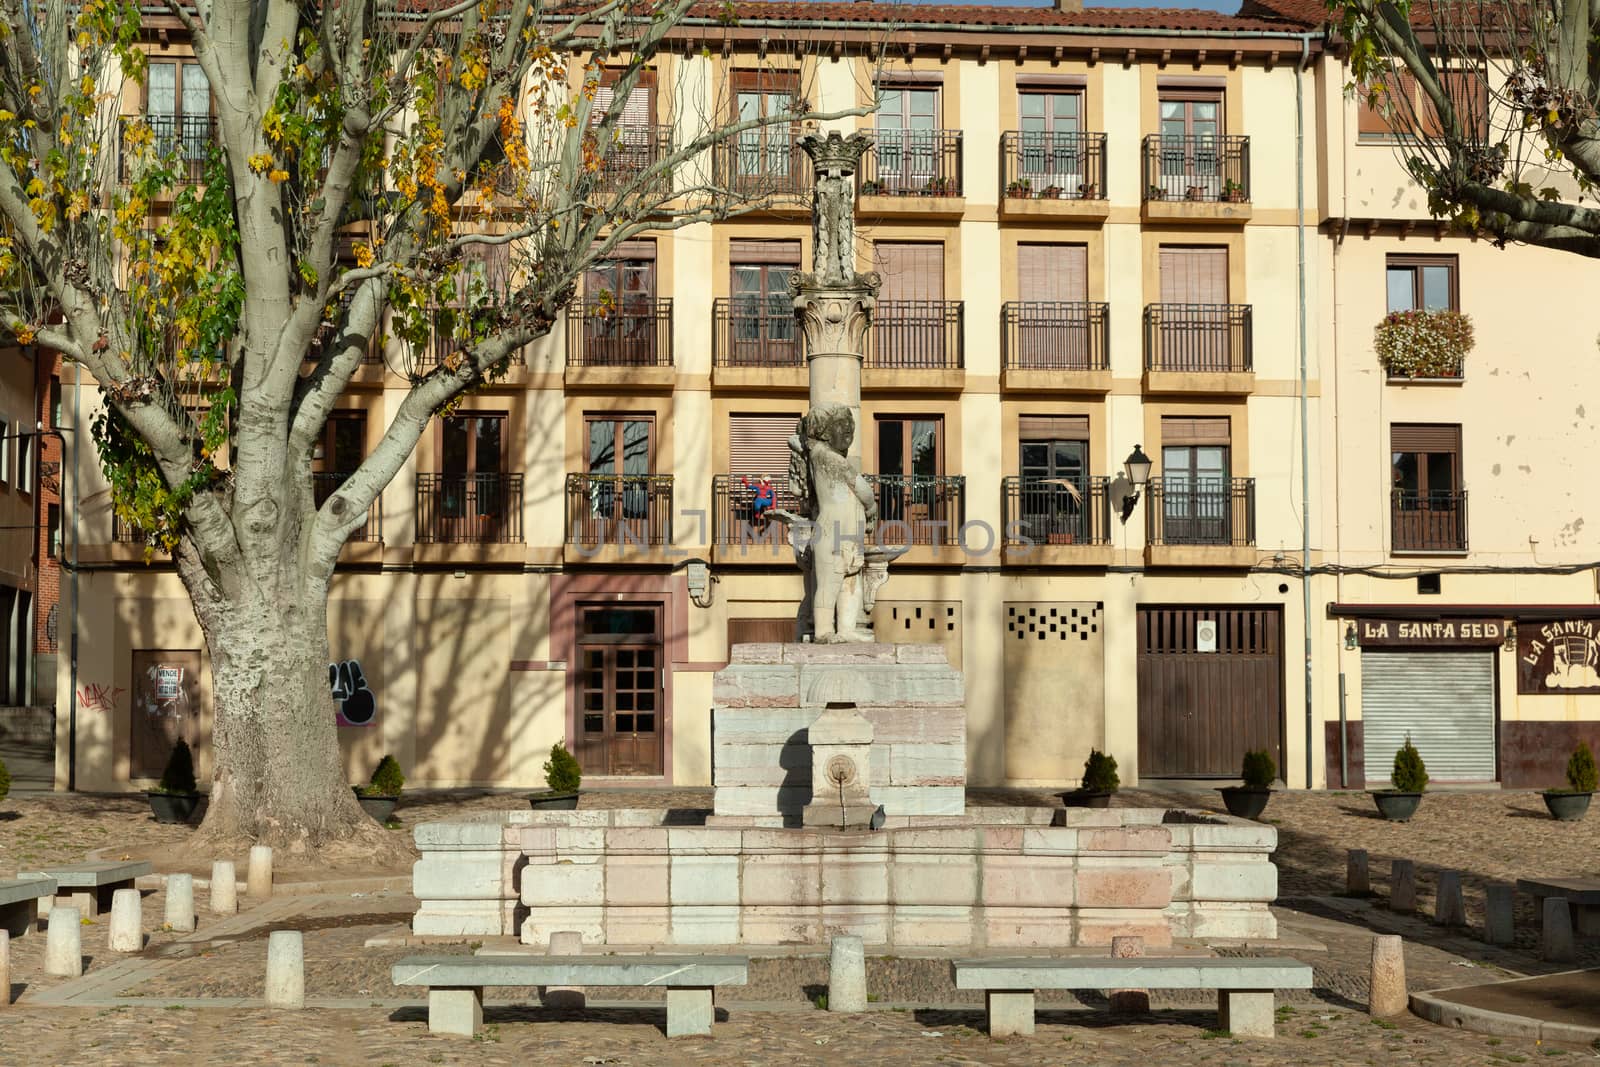 Leon, Spain - 9 December 2019: Plaza Sta. María del Camino, barrio humedo